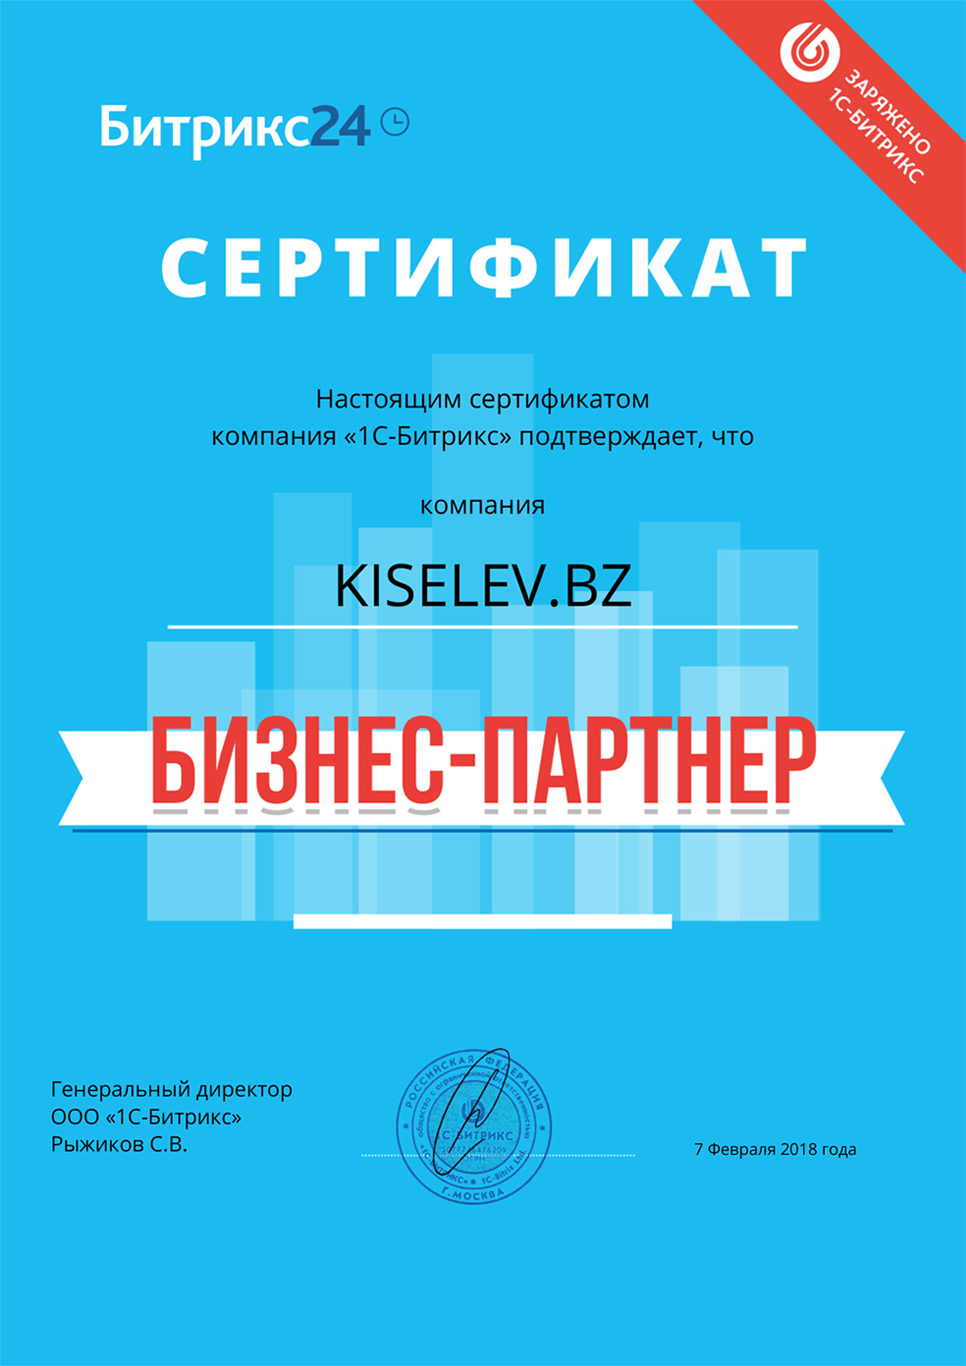 Сертификат партнёра по АМОСРМ в Екатеринбурге